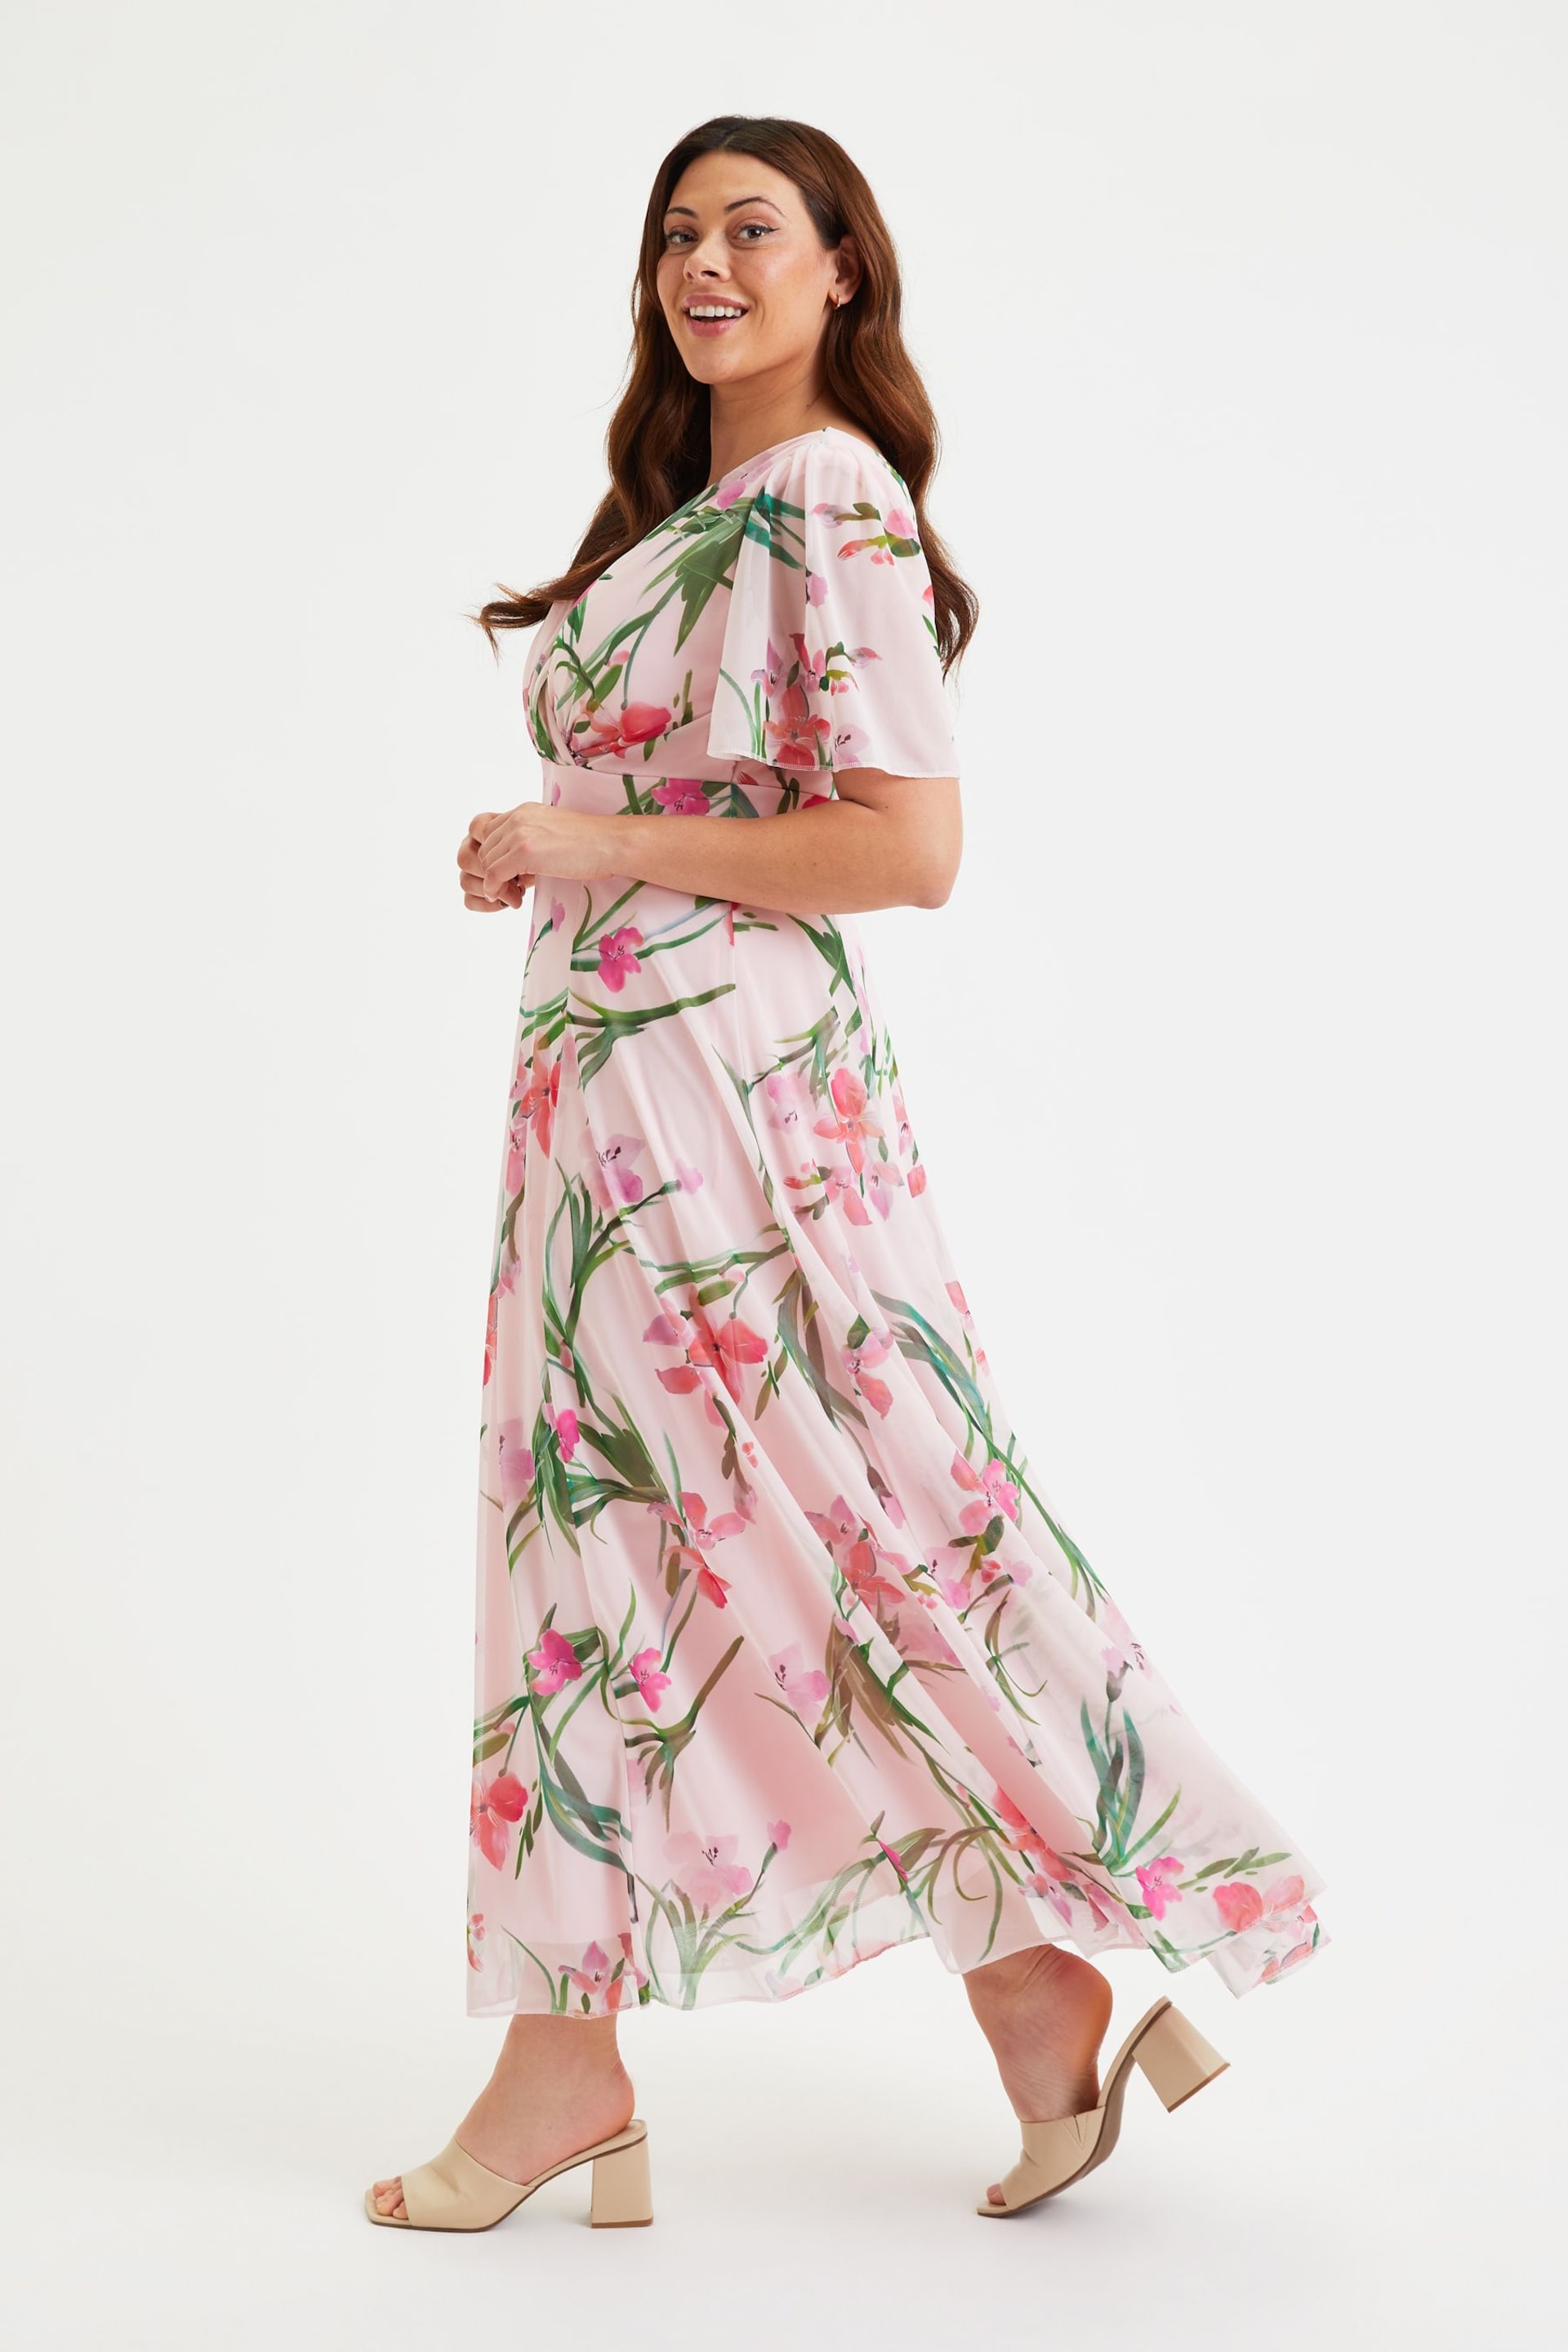 Scarlett & Jo Pink Isabelle Angel Sleeve Maxi Dress - Image 4 of 5